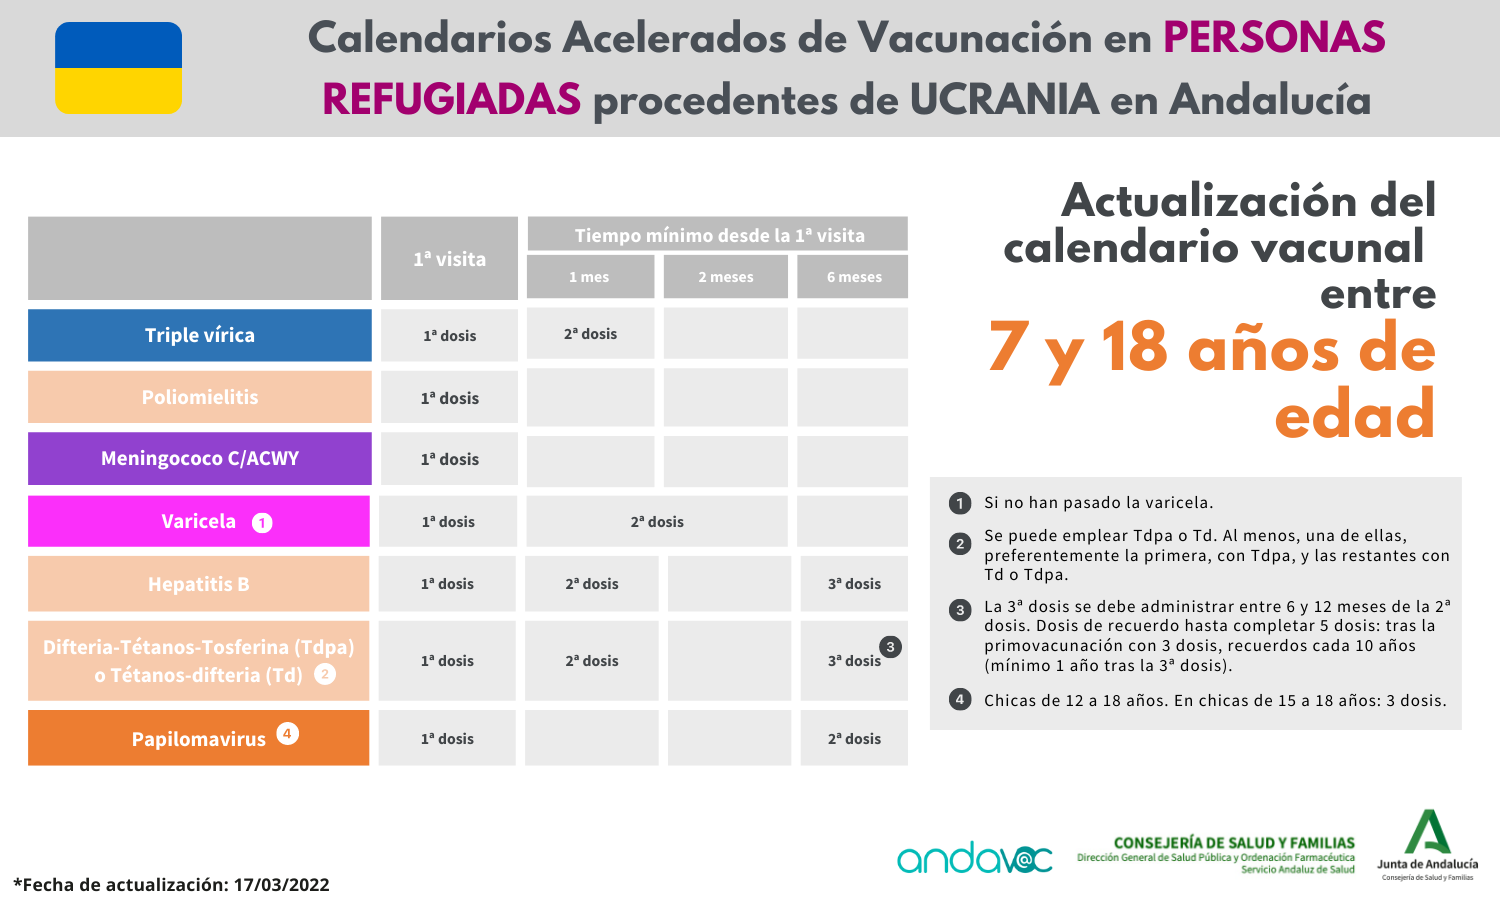 Calendario vacunación refugiados Ucrania entre 7 y 18 años